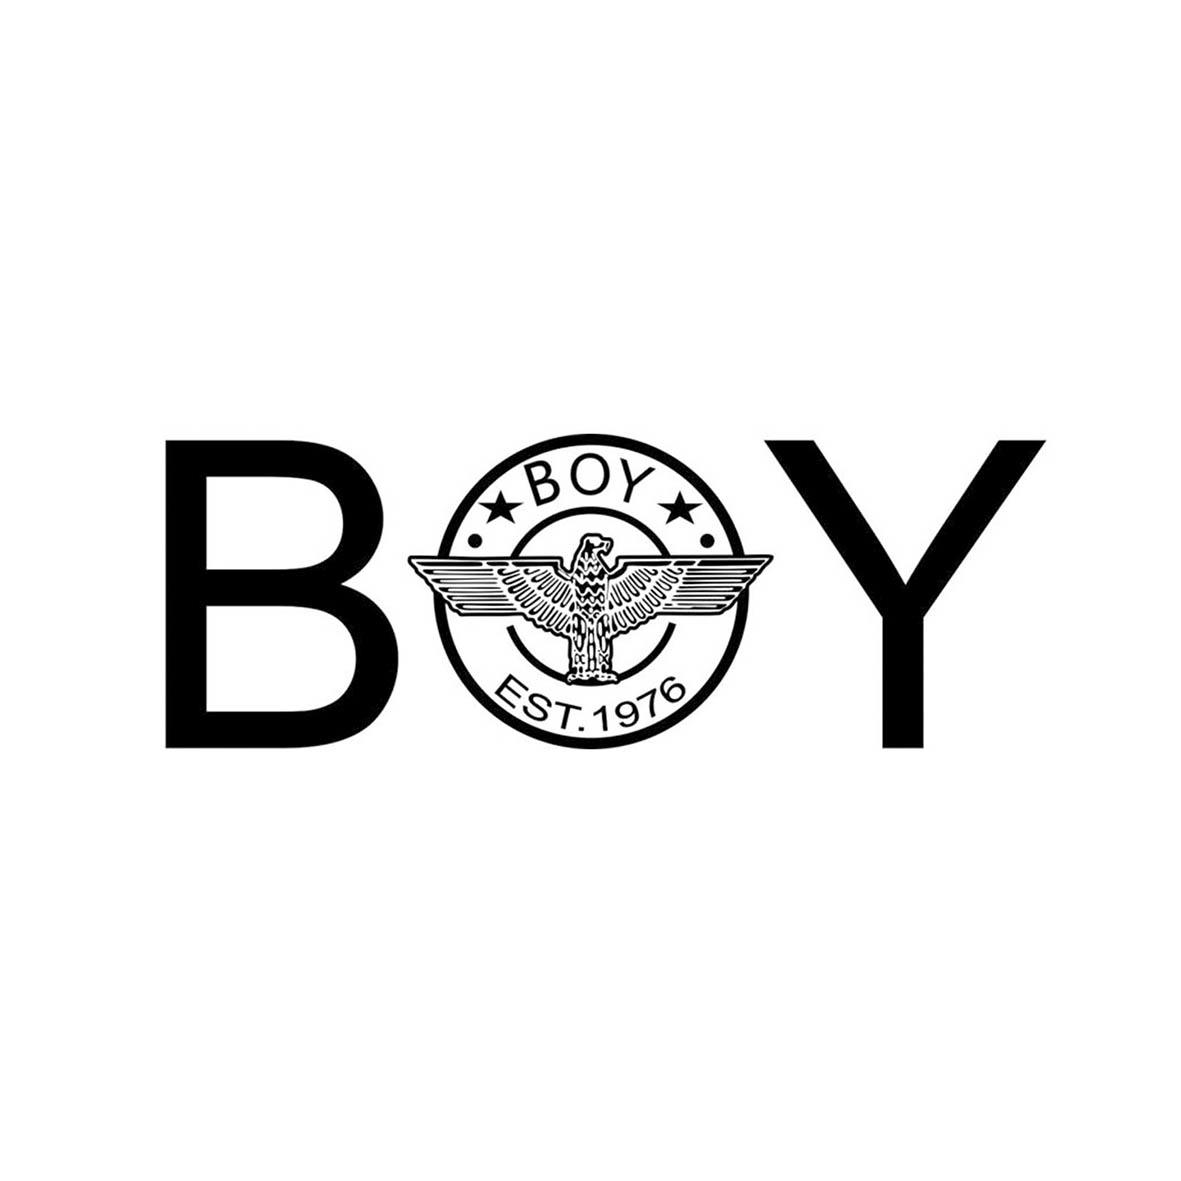 商标详情 商标图案: 商标名称: by boy est 1976 状态: 等待审查 申请